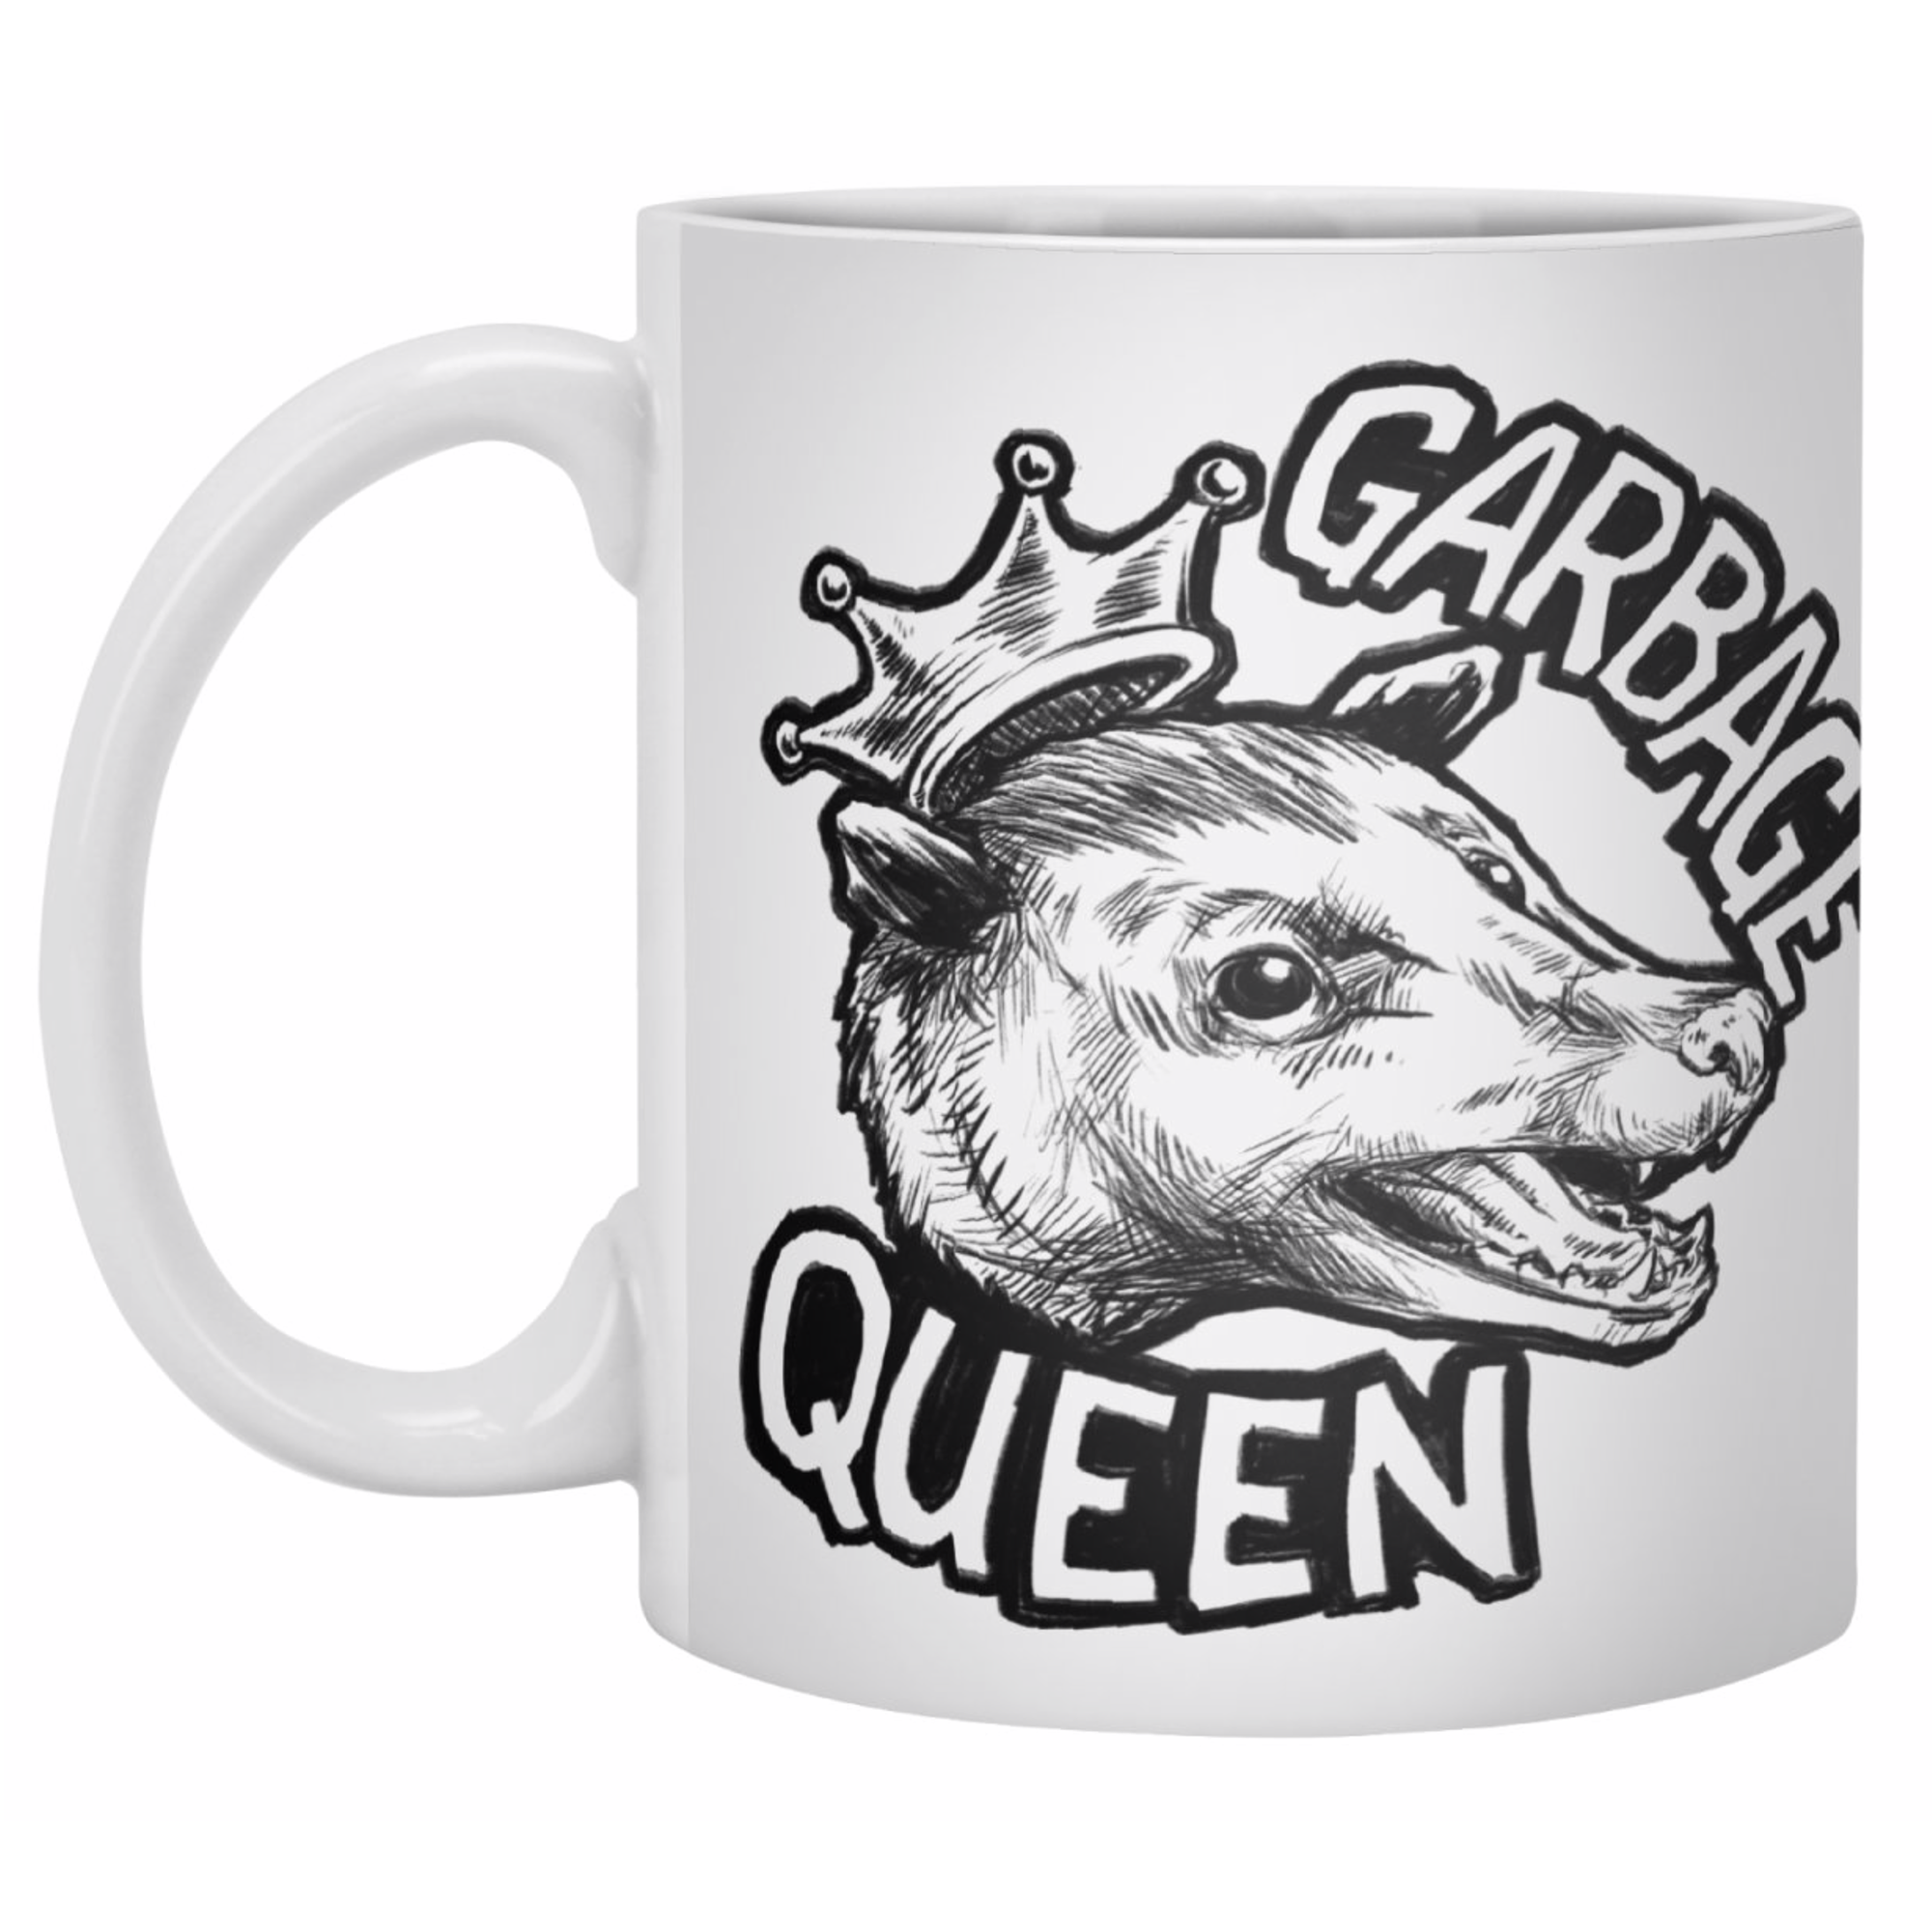 Garbage-Queen-Mug.png